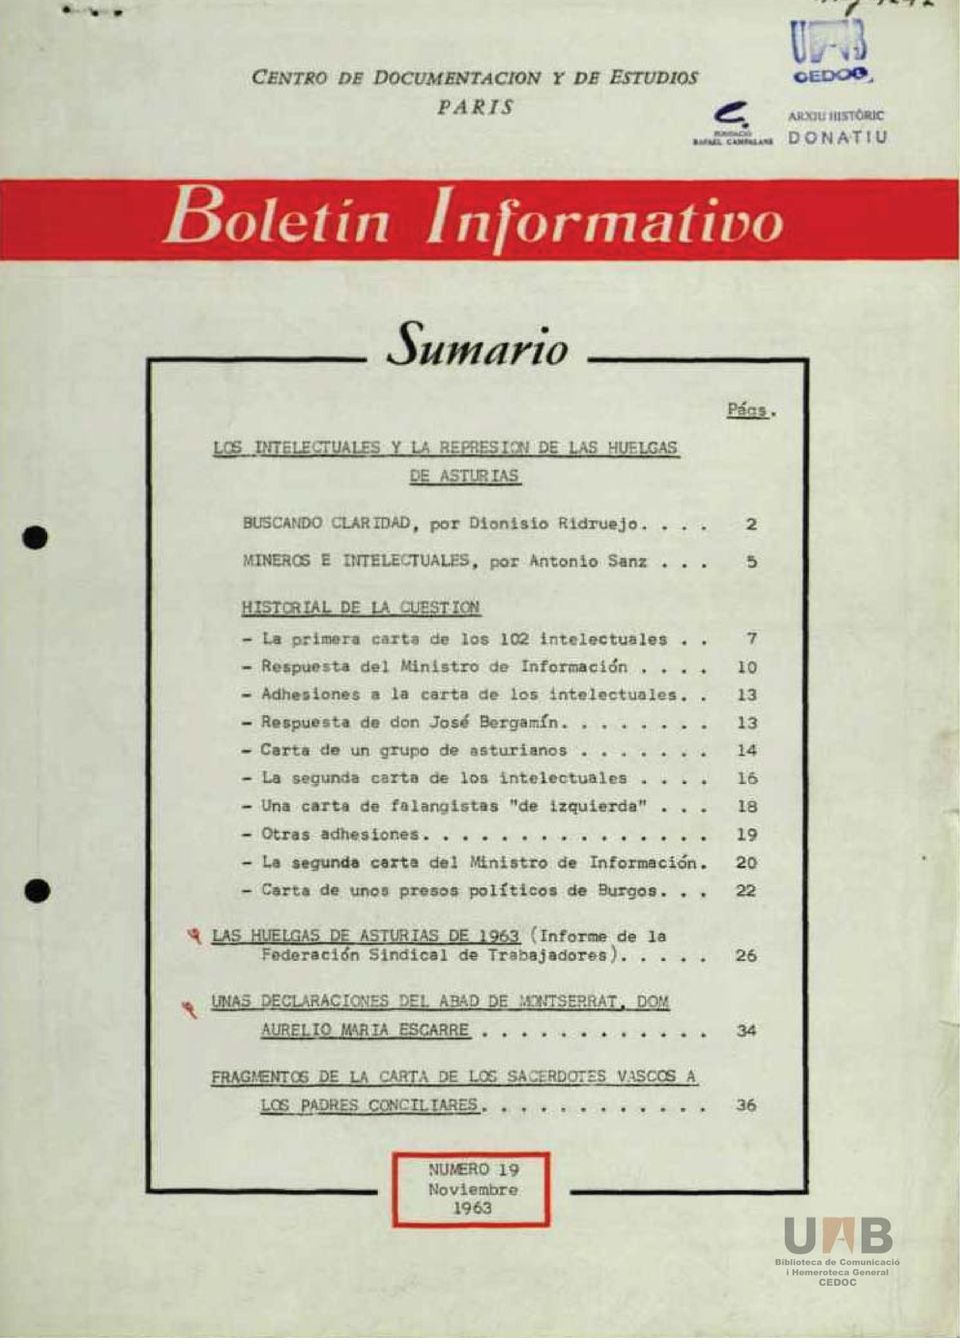 ... 2 MINEROS E INTELECTUALES, por Antonio Sanz... 5 HISTORIAL DE LA CUESTIÓN - La primera carta de los 102 intelectuales.. 7 - Respuesta del Ministro de Información.